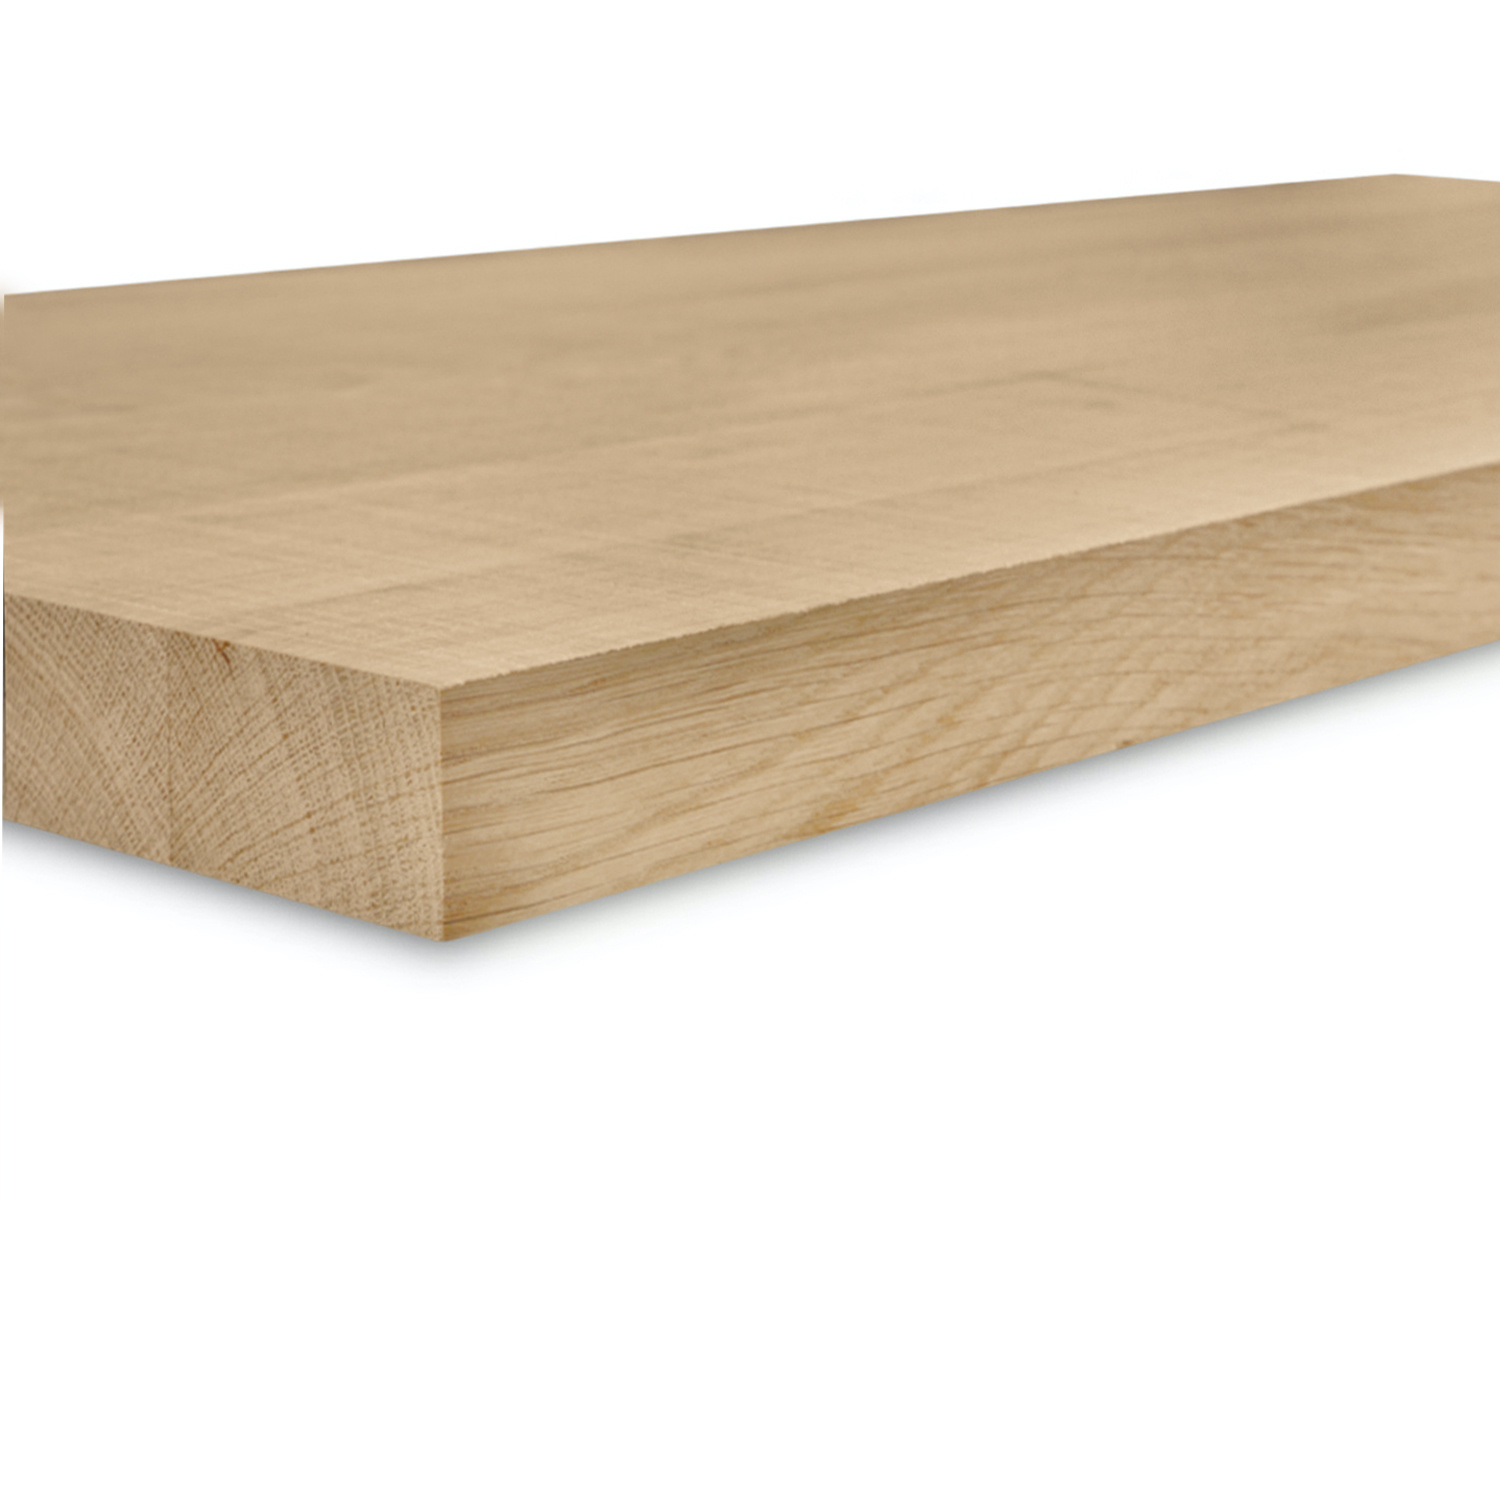  Leimholzplatte Eiche nach Maß - 4 cm dick  - Eichenholz A-Qualität - Sägerau Optik - Eiche Massivholzplatte - verleimt & künstlich getrocknet (HF 8-12%) - 15-120x20-350 cm